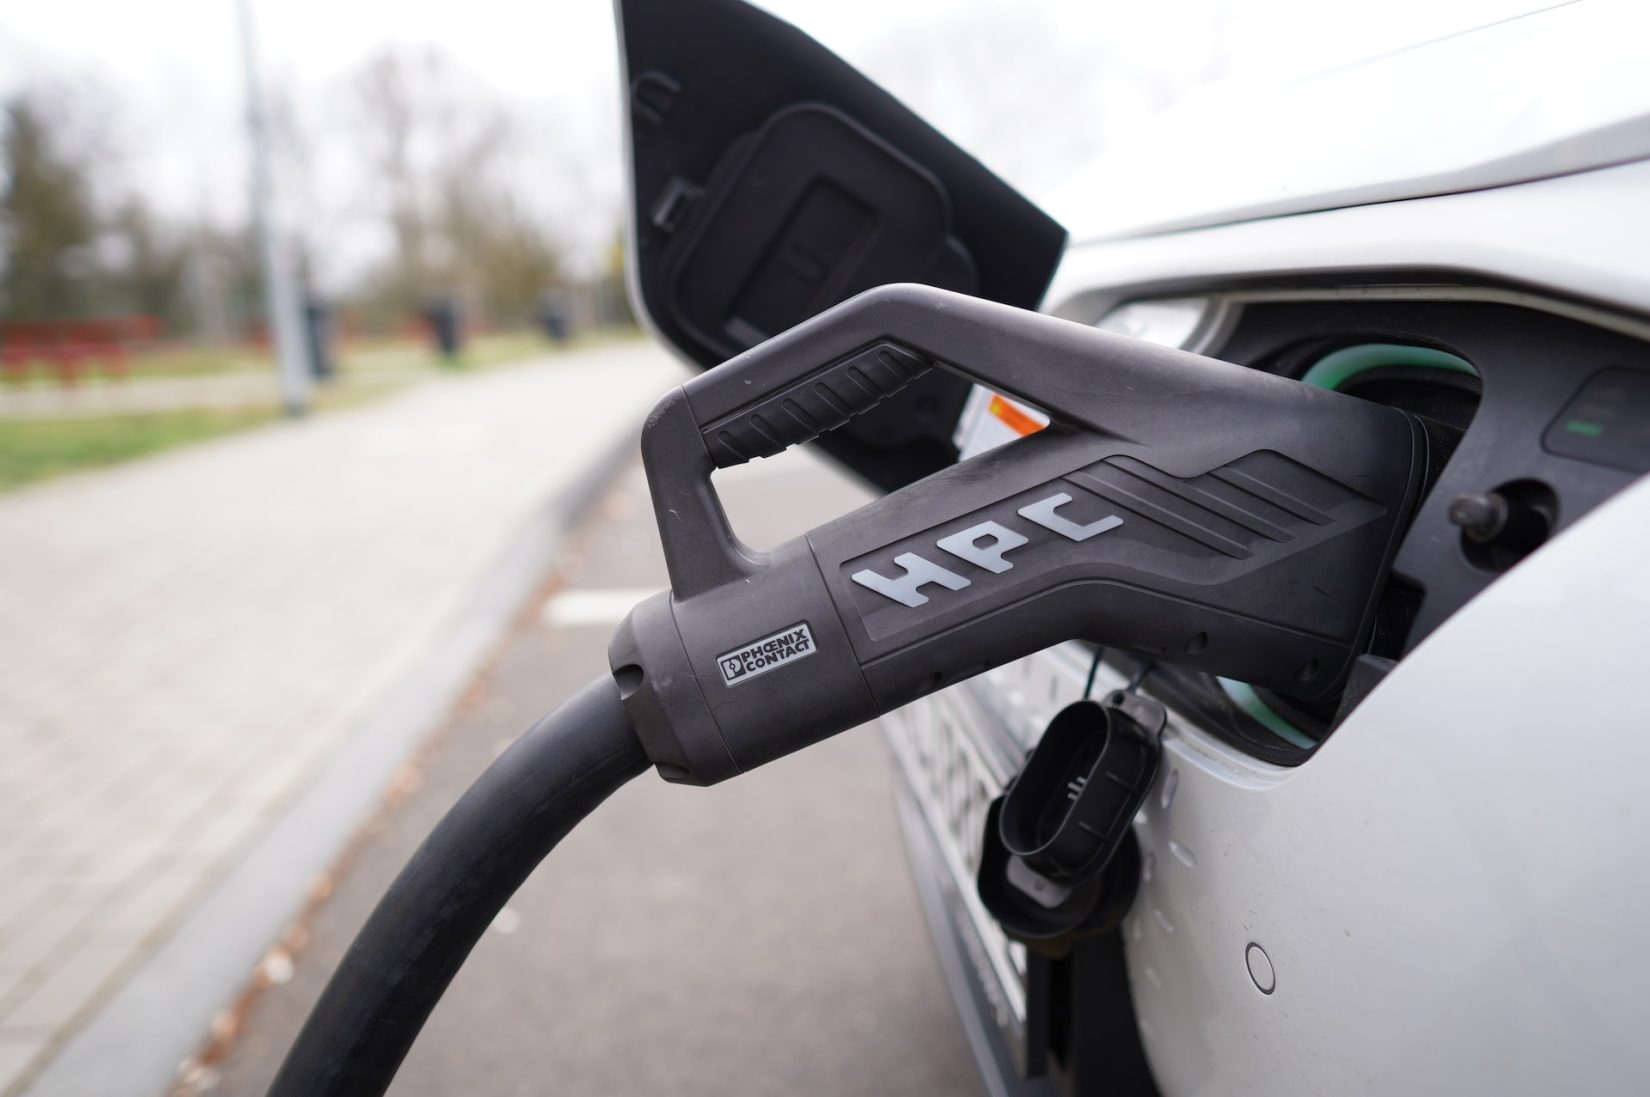 Propriétaires de voitures électriques : des étapes simples pour économiser sur les coûts de recharge